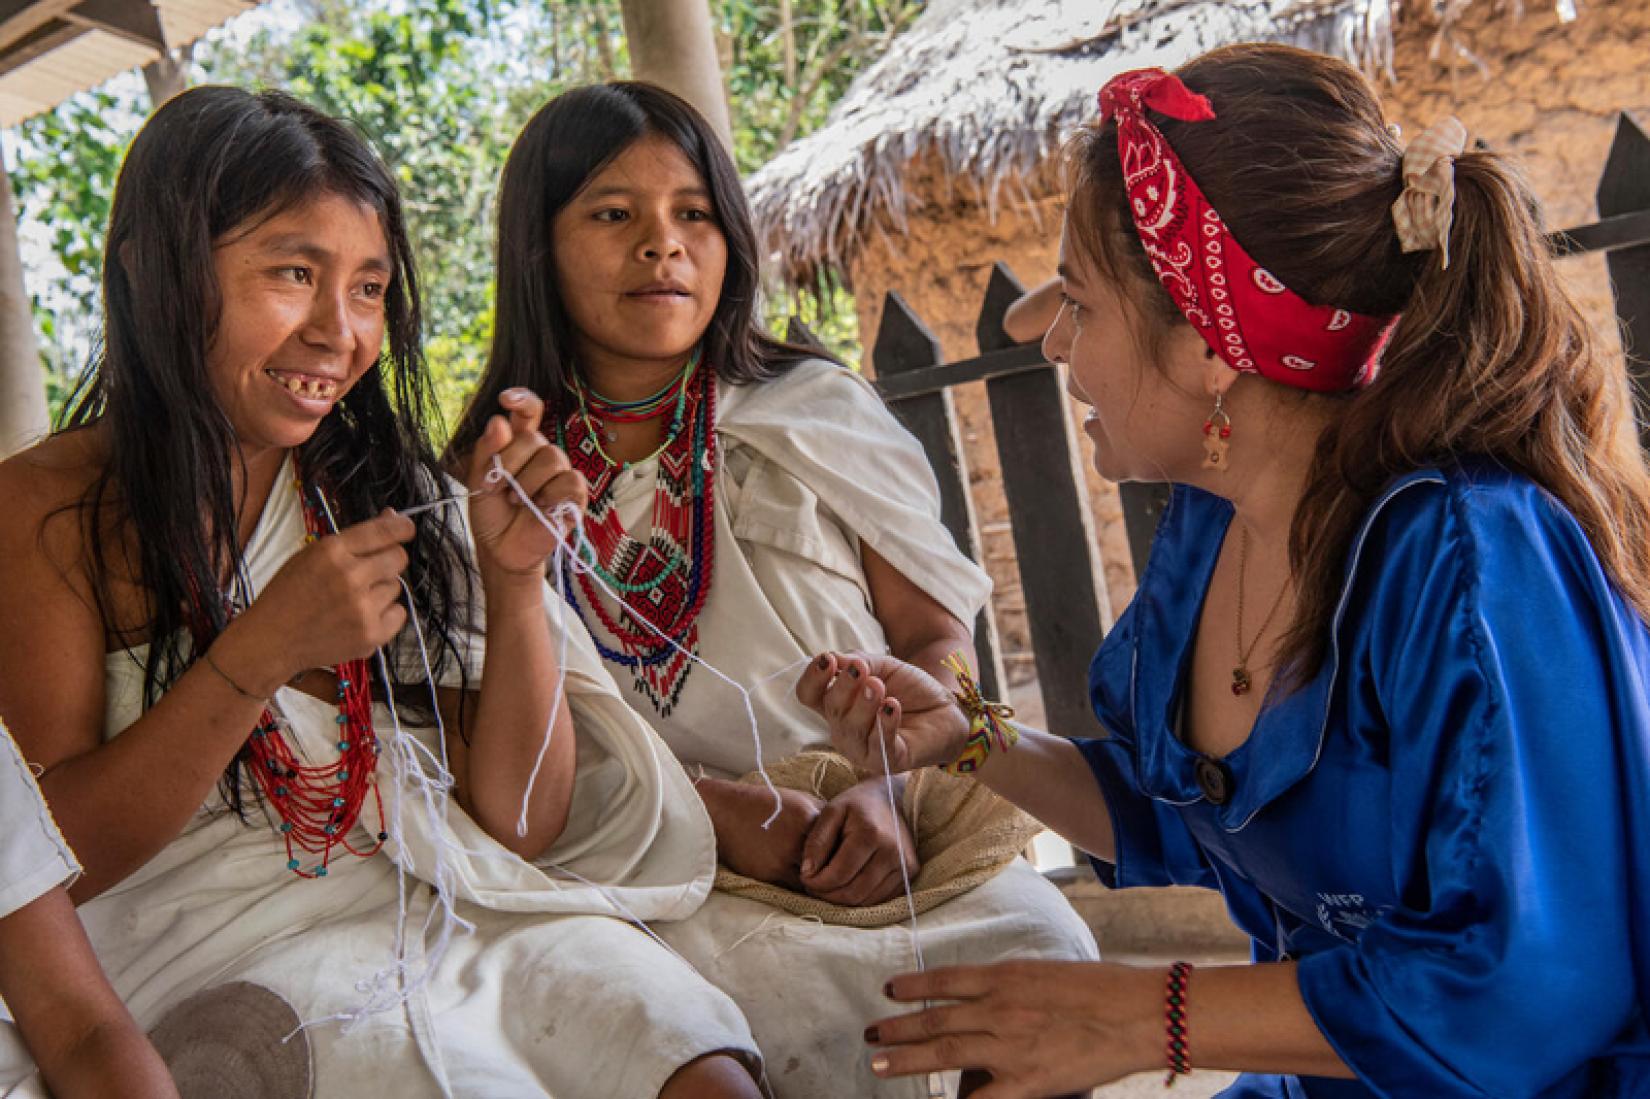 Graciela Barros, miembro de WFP en Colombia e indígena Wayúu, porta su “manta” con visibilidad del Programa Mundial de Alimentos en su visita a otra comunidad indígena de la región, el pueblo Arhuaco.